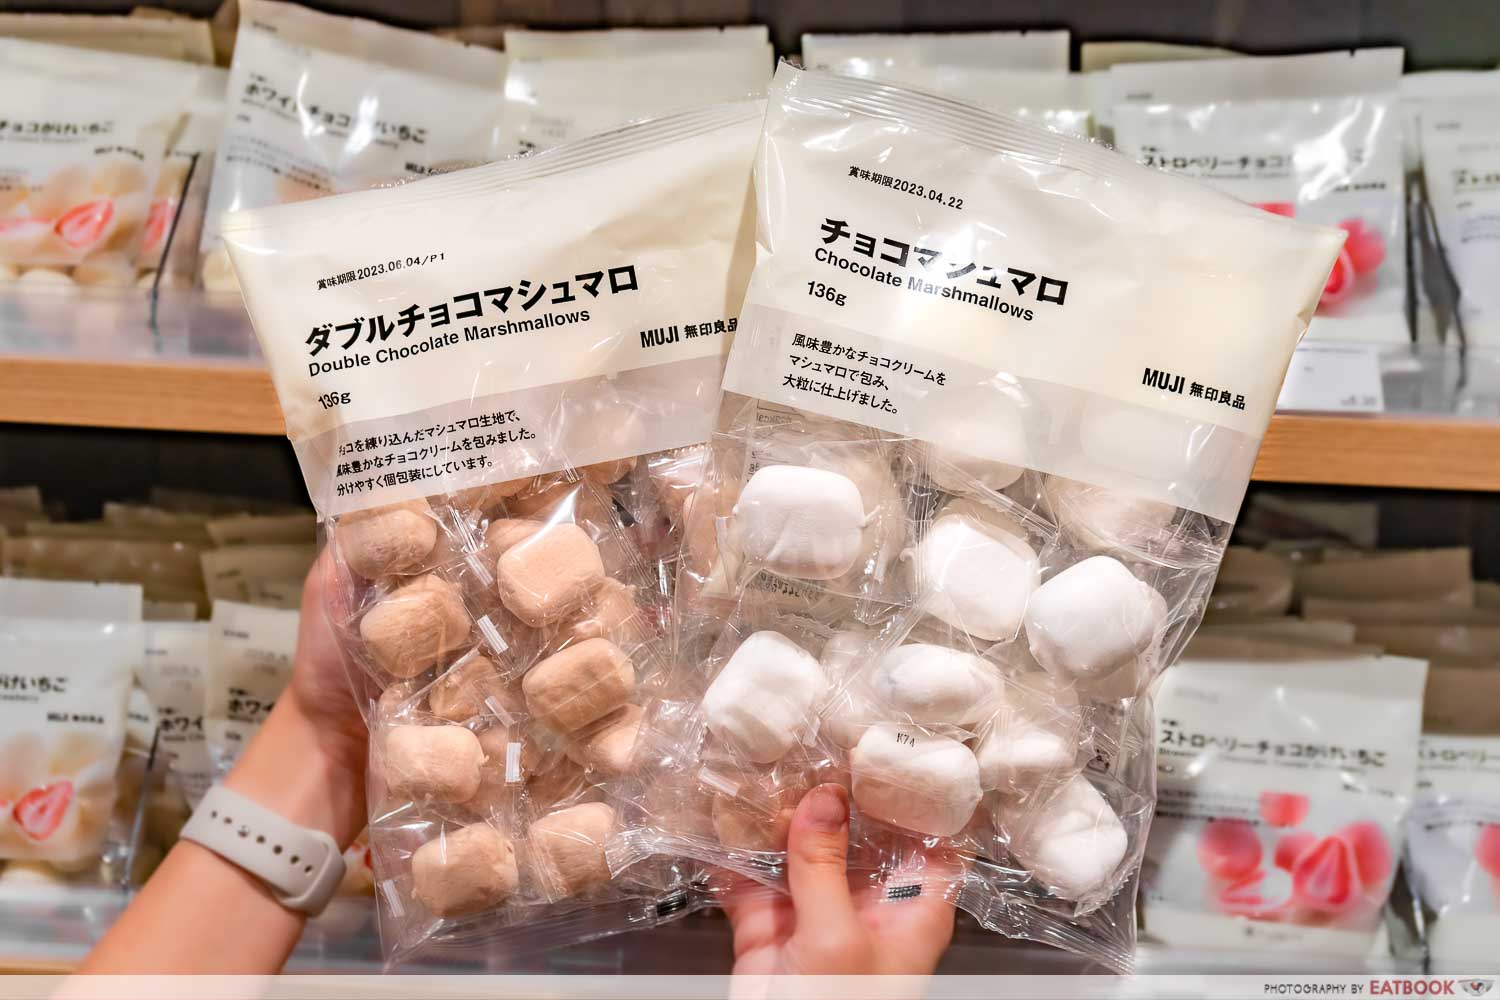 muji snacks - marshmallows